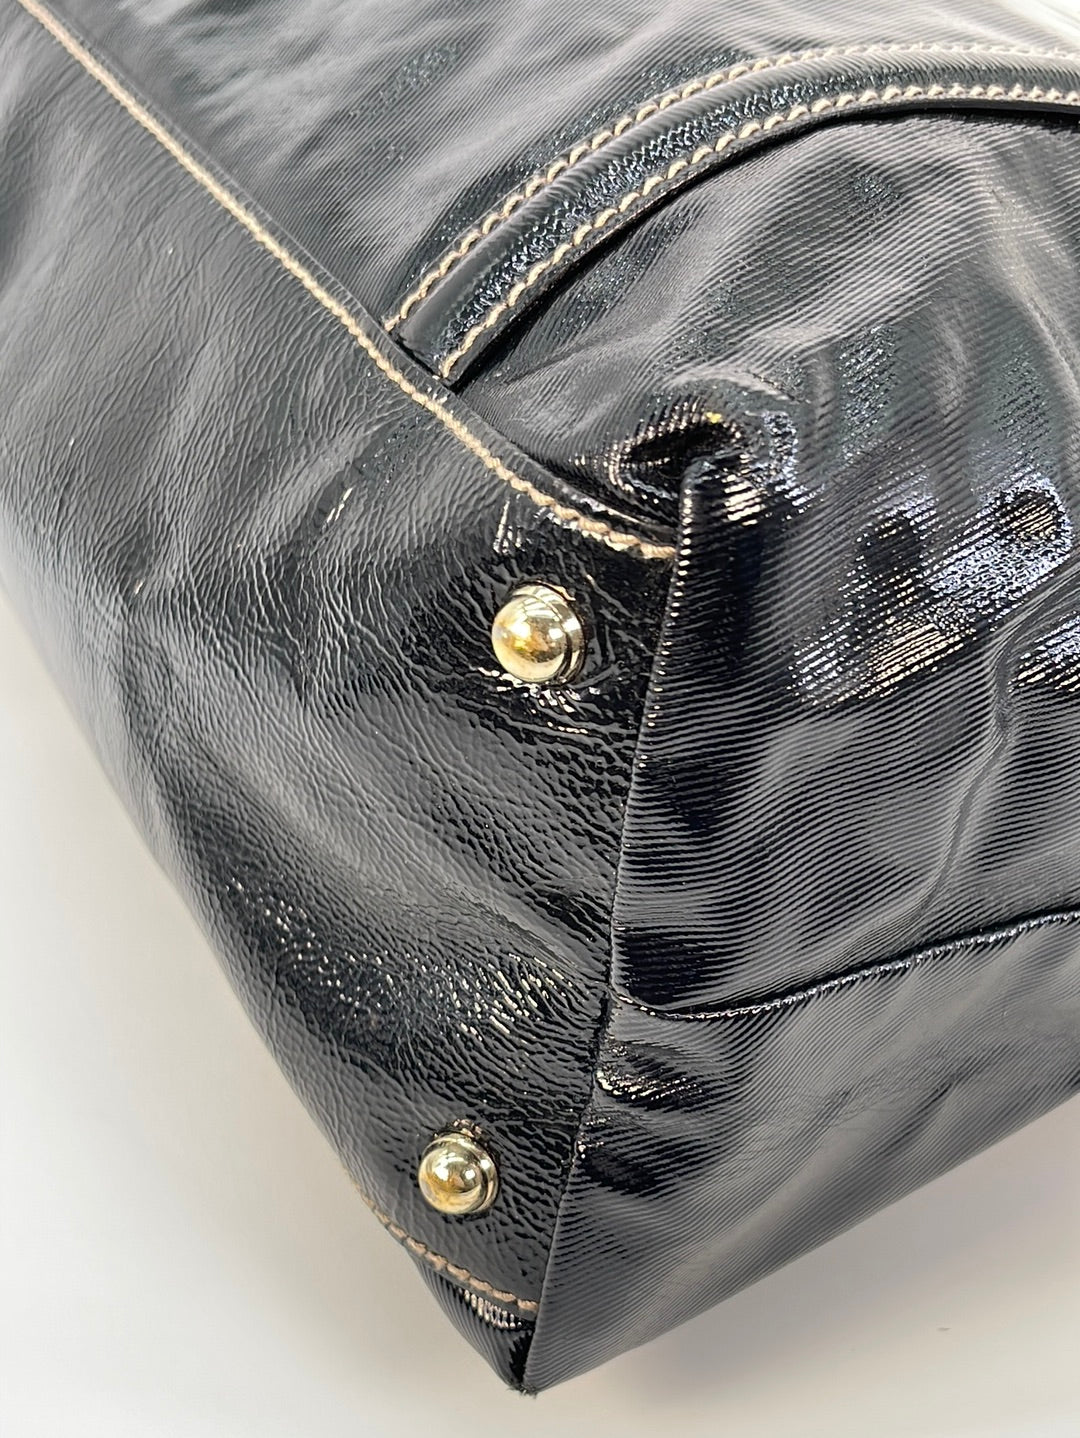 Preloved Gucci Britt Large Black Patent Shoulder Bag 162094213317 033023 - $70 OFF FLASH SALE